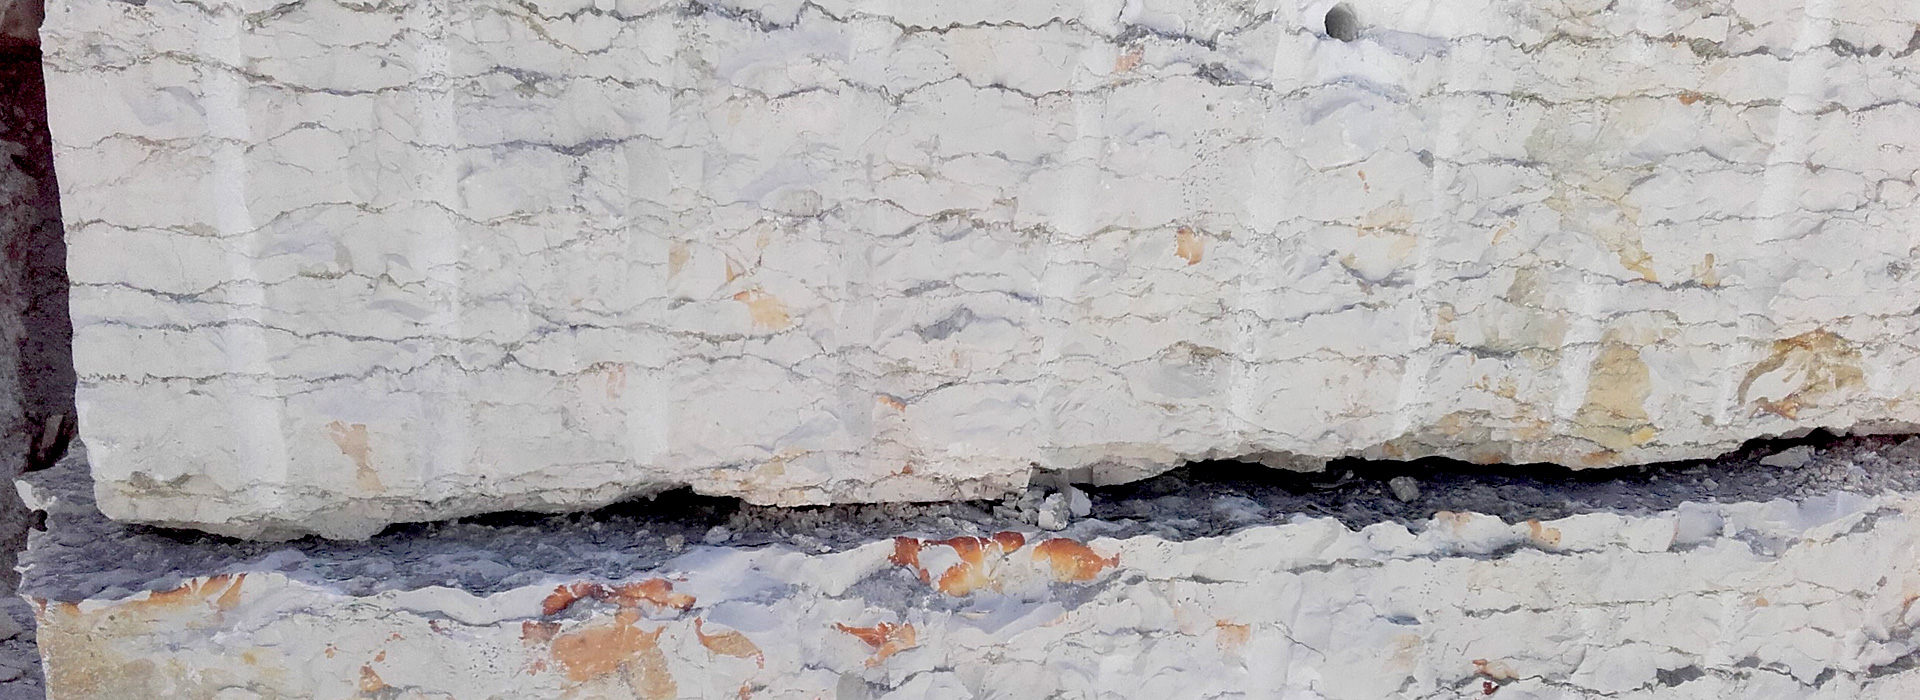 Estrazione marmi dell'Altopiano di Asiago - blocchi marmo bianco